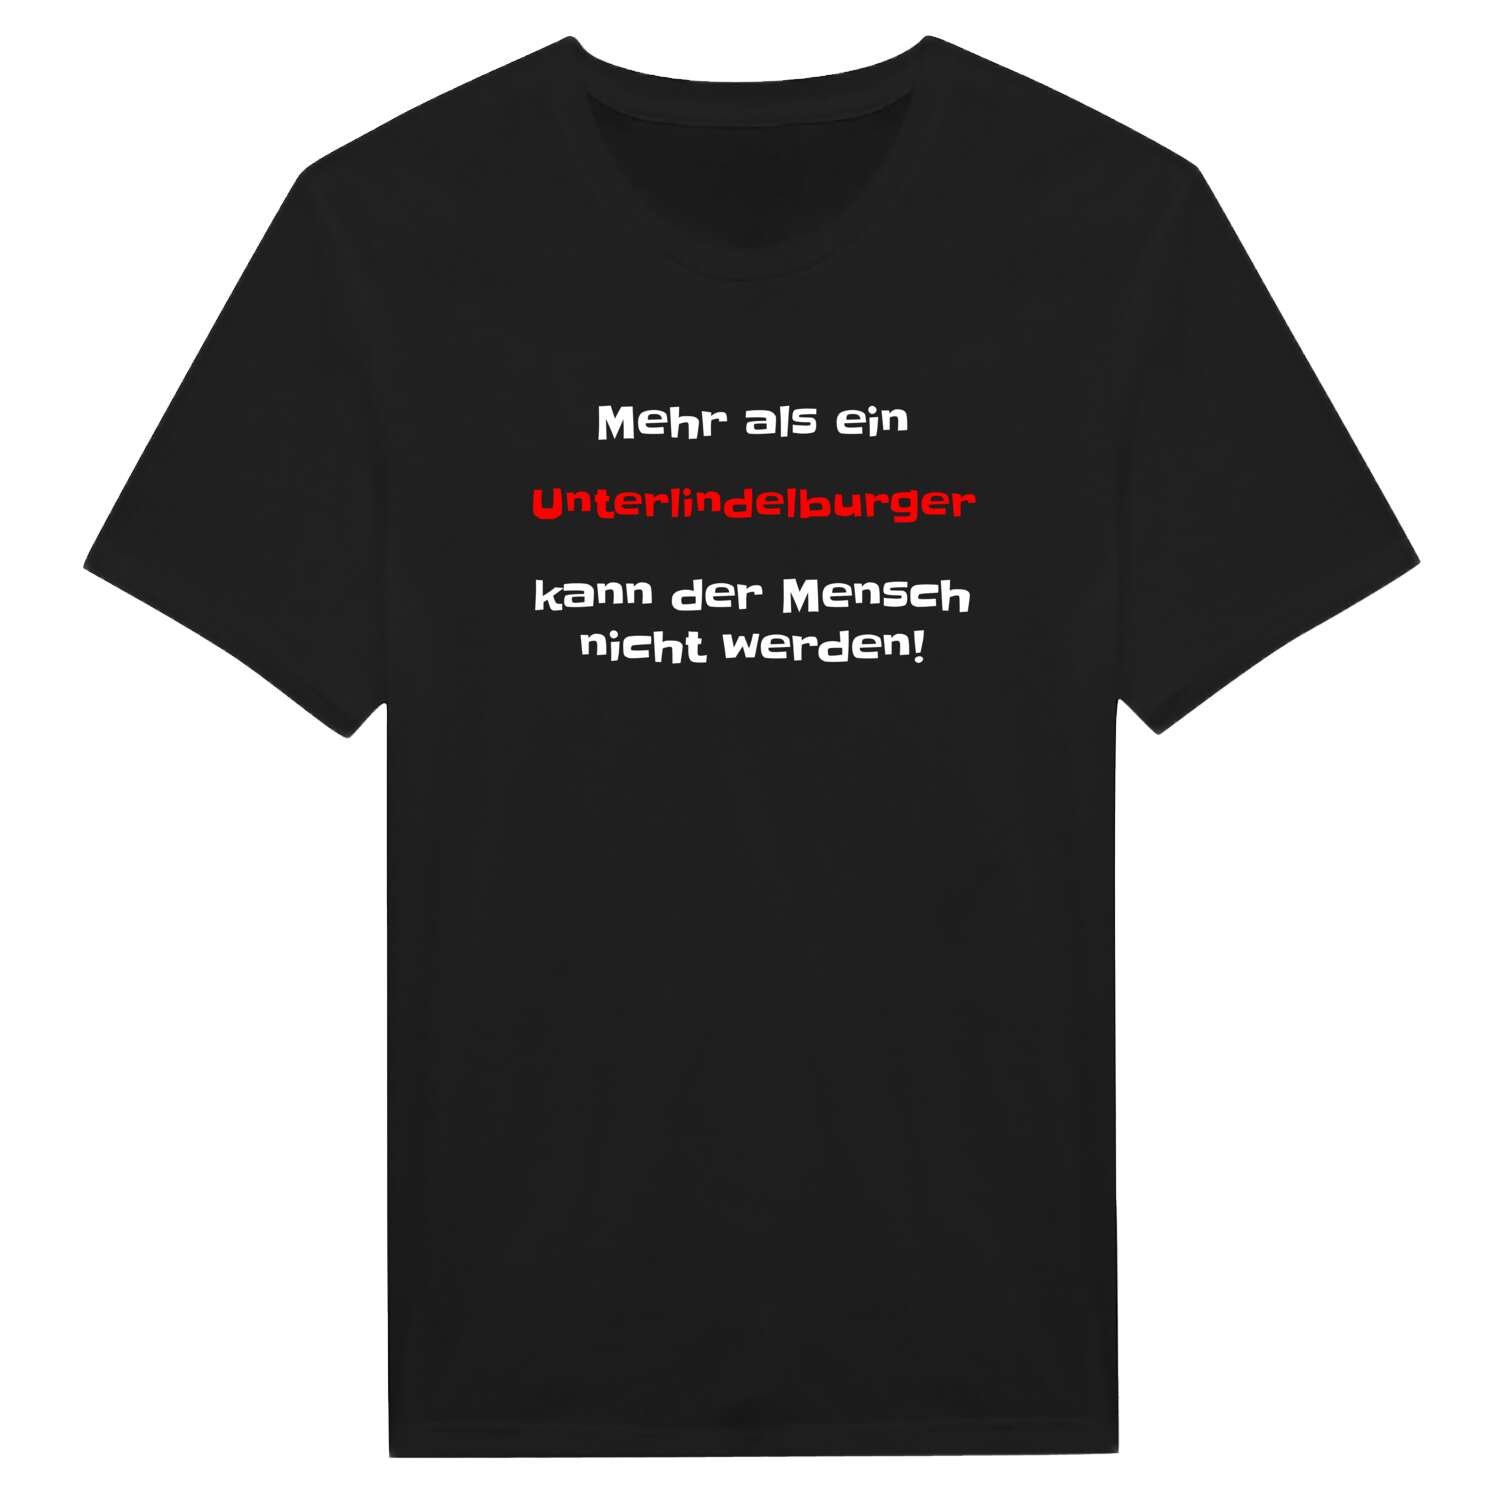 Unterlindelburg T-Shirt »Mehr als ein«